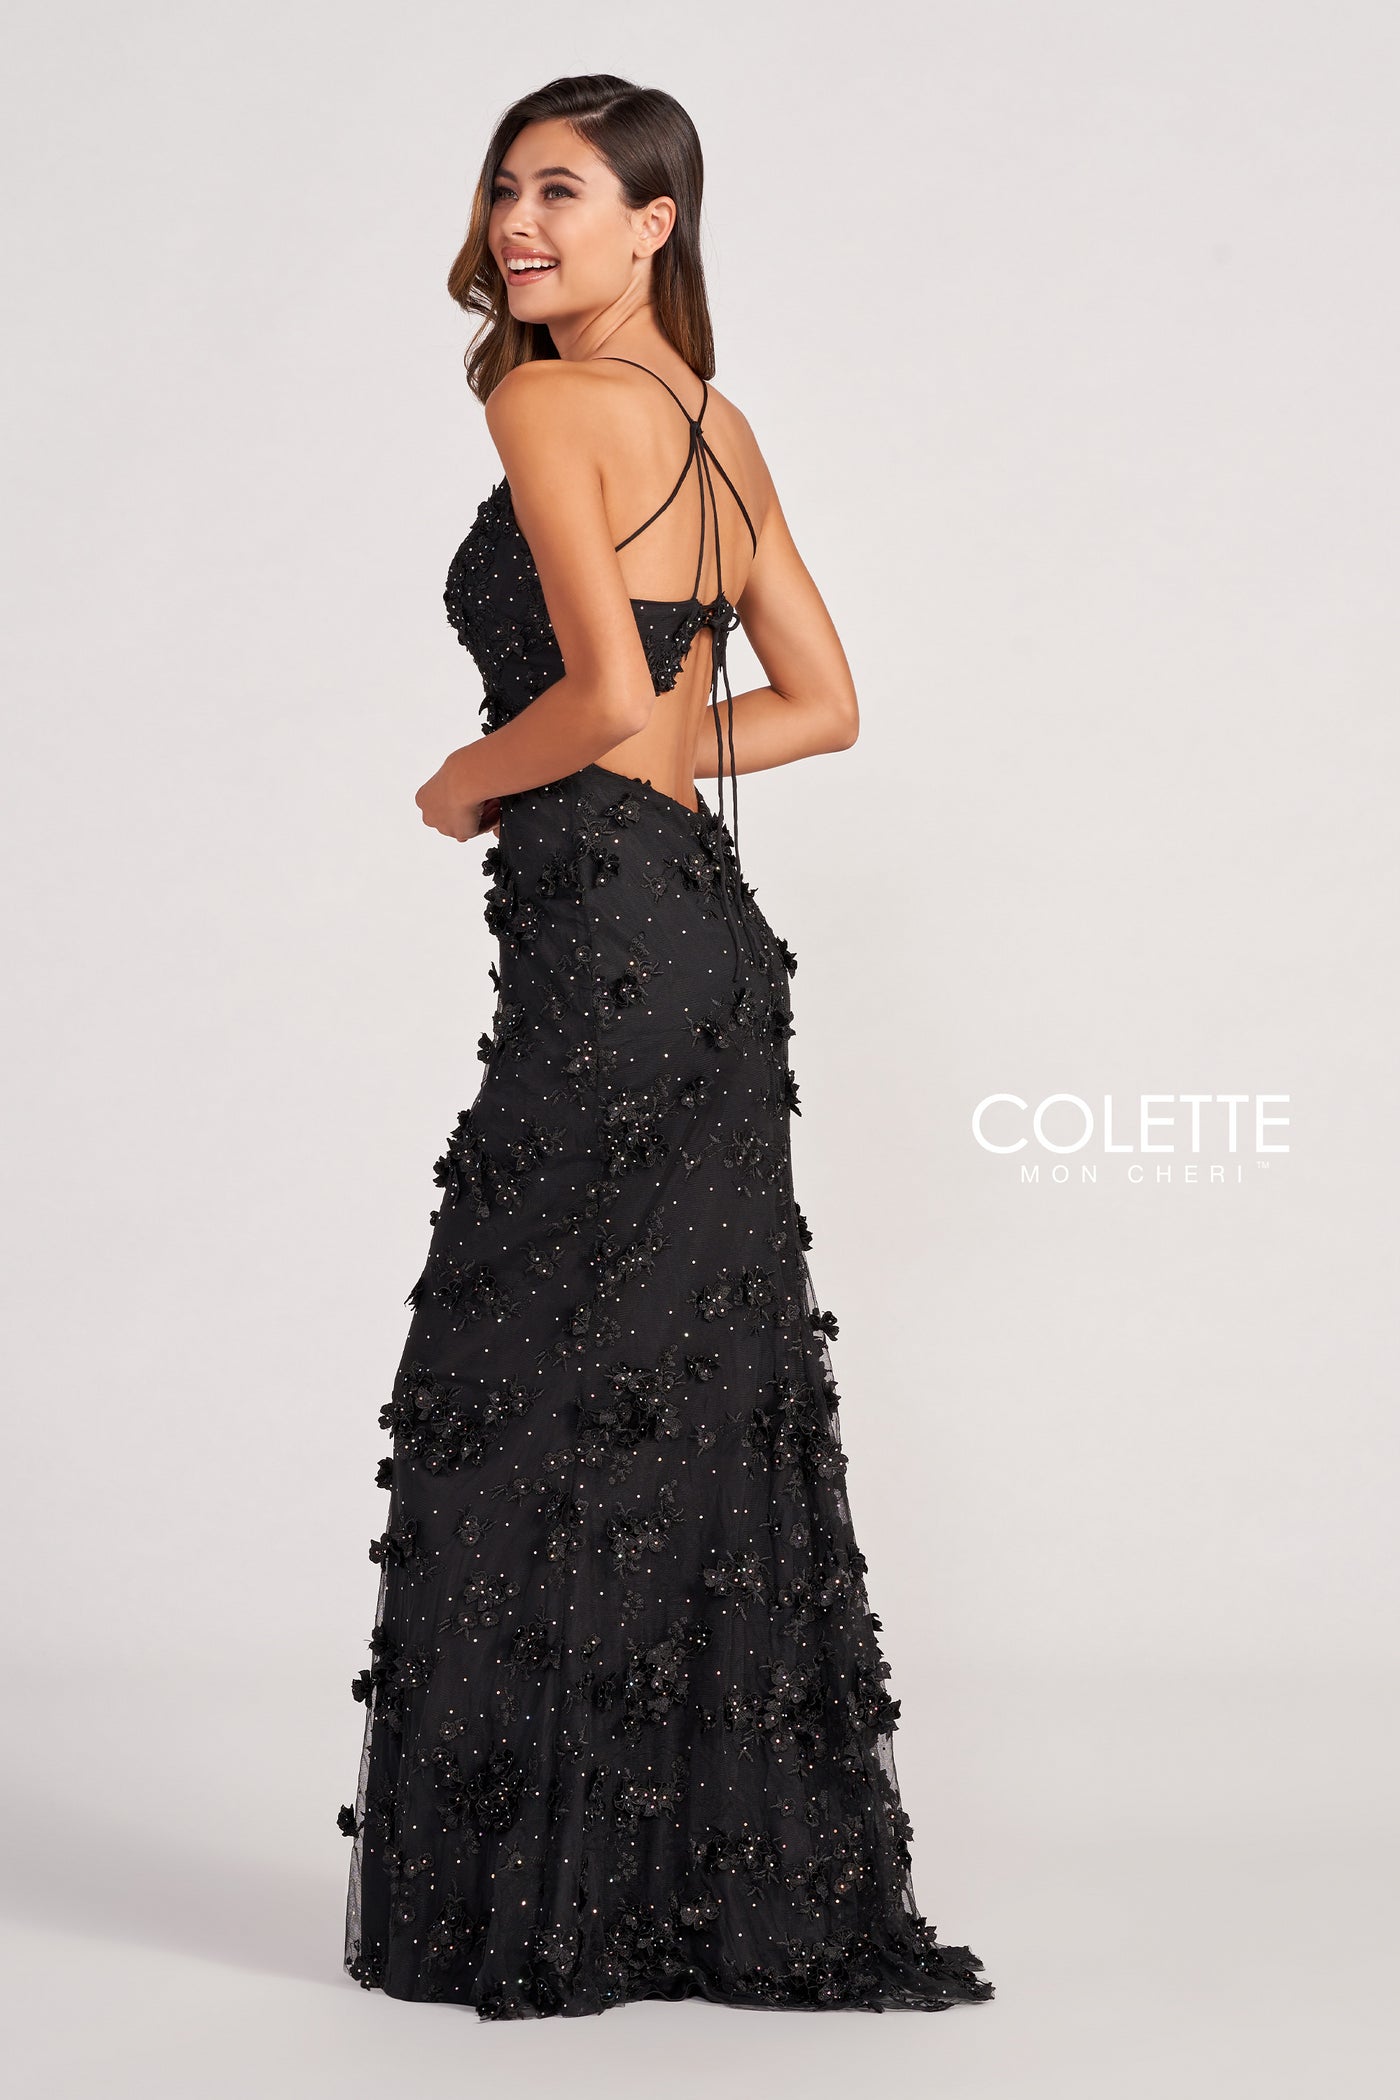 Colette CL2058 - Mydressline